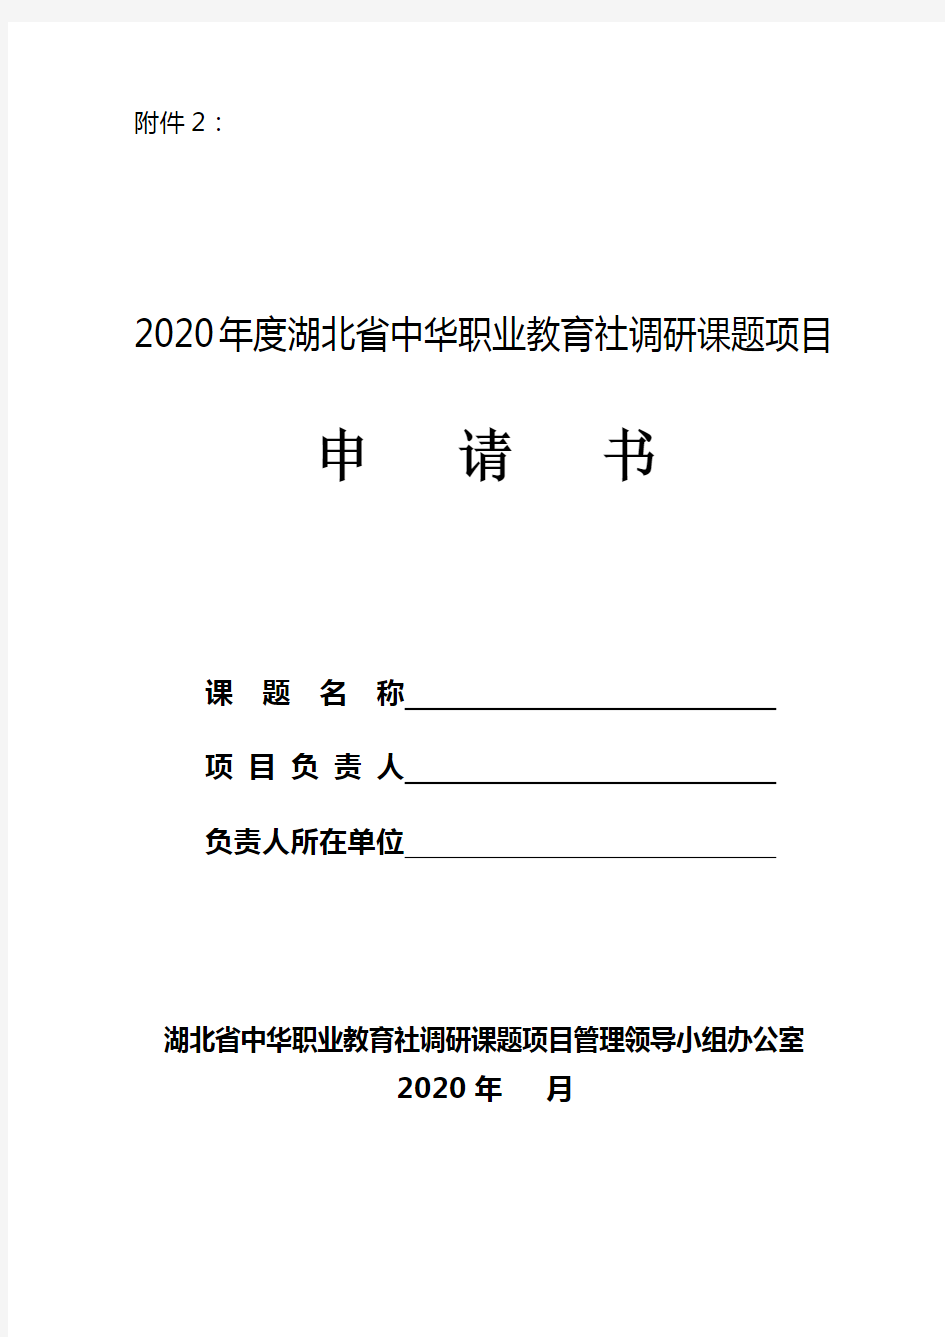 2020年度湖北省中华职业教育社调研课题项目申请书